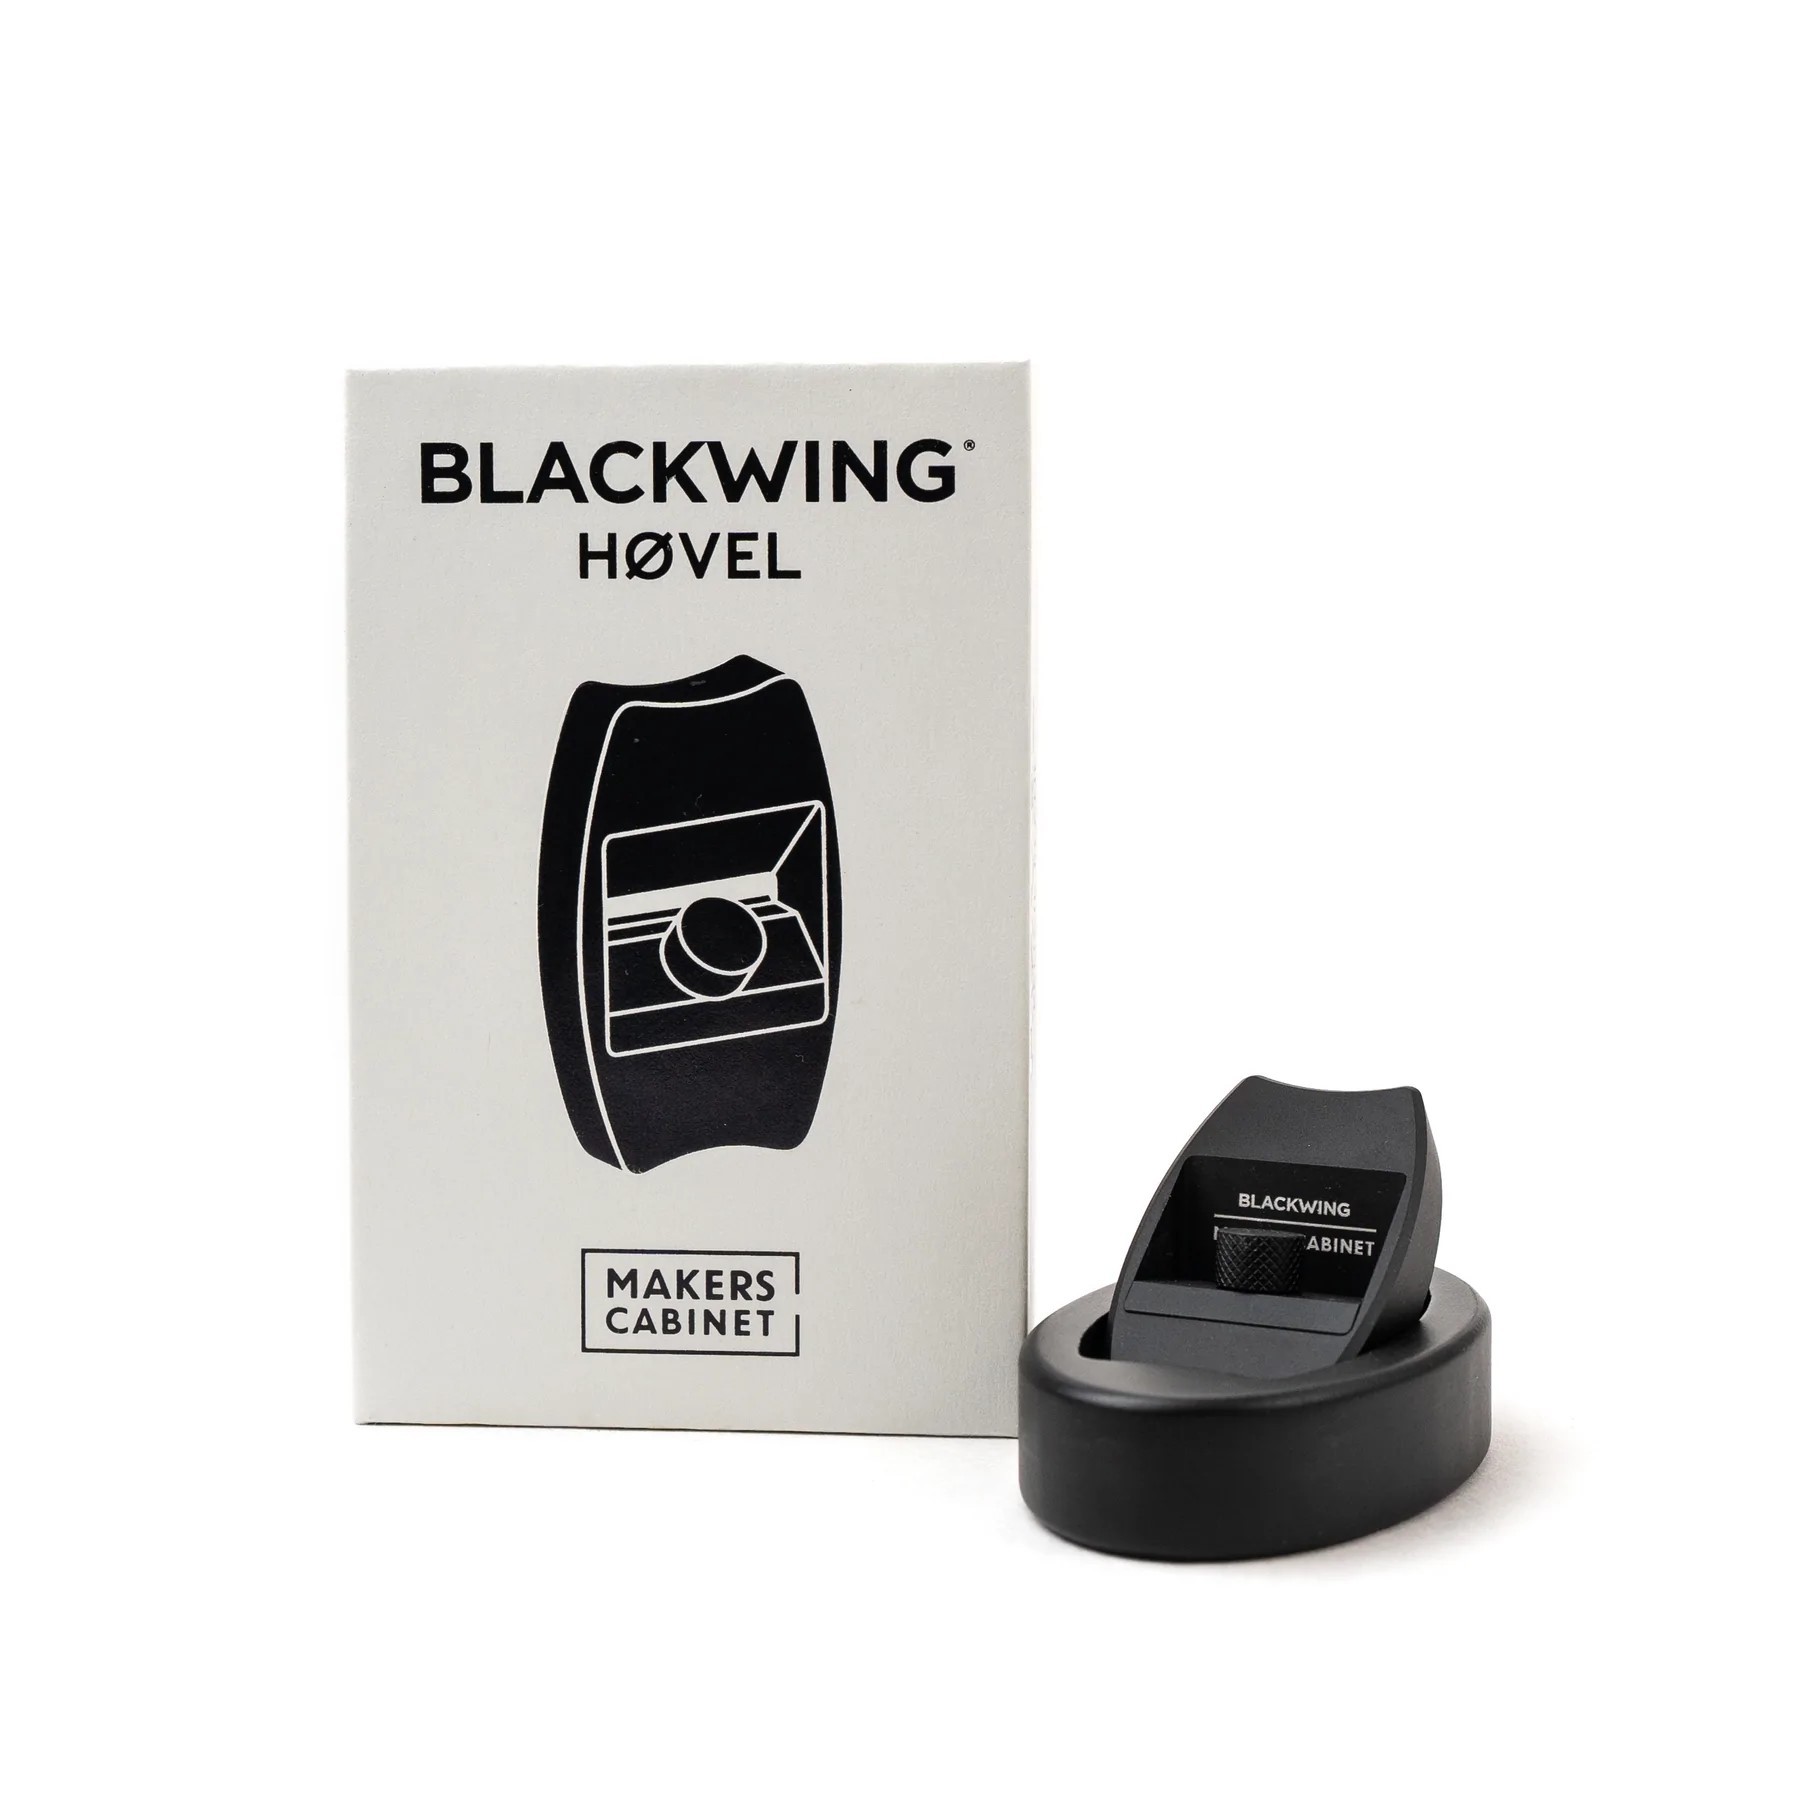 Blackwing Hovel Pencil Sharpener